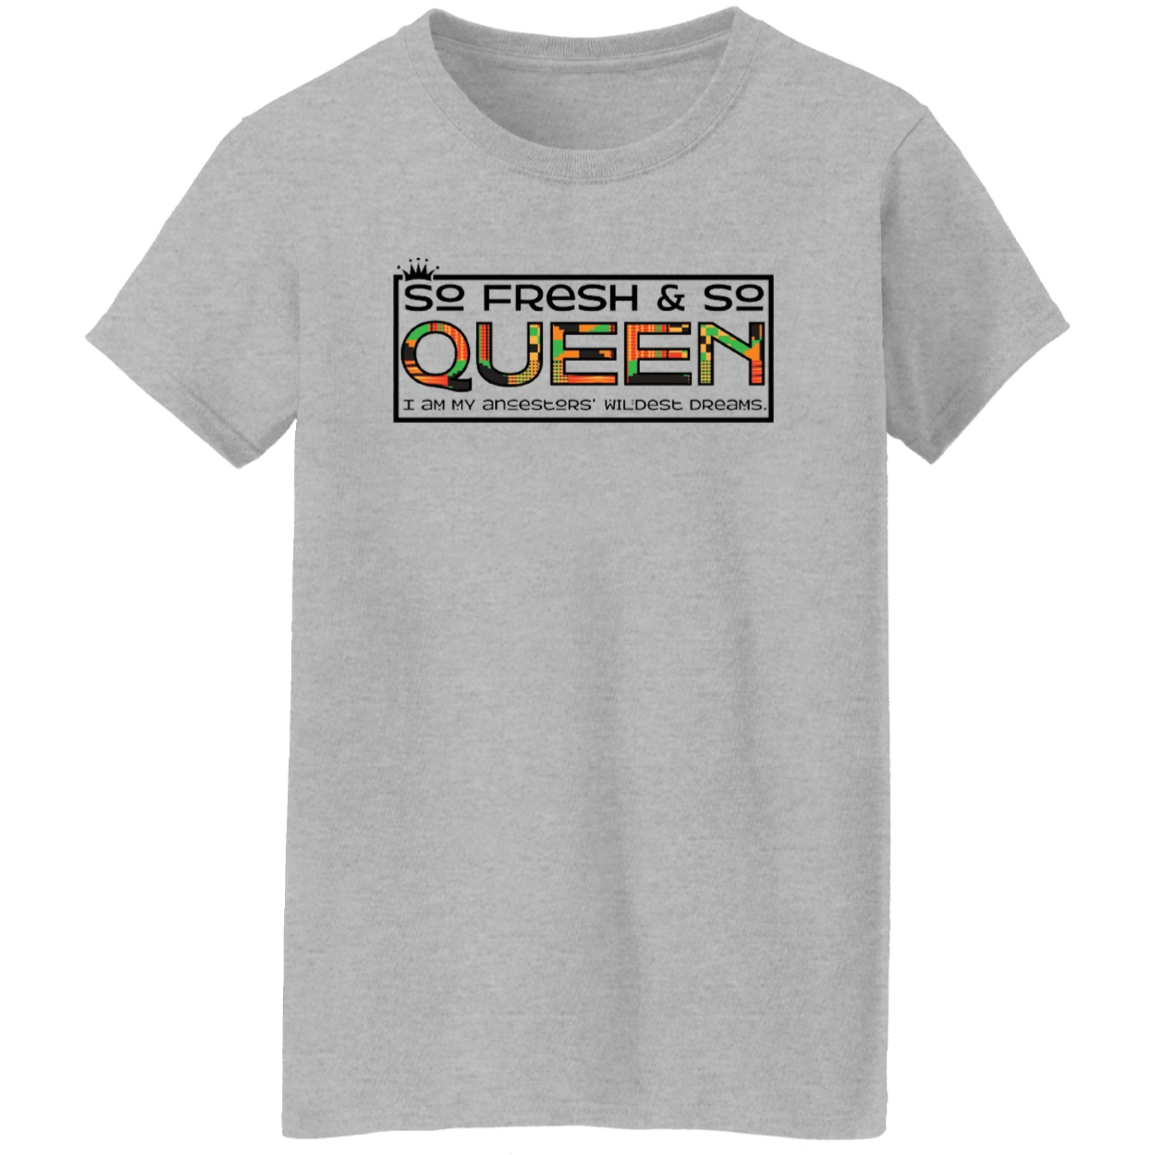 So Fresh, So Queen T-Shirt